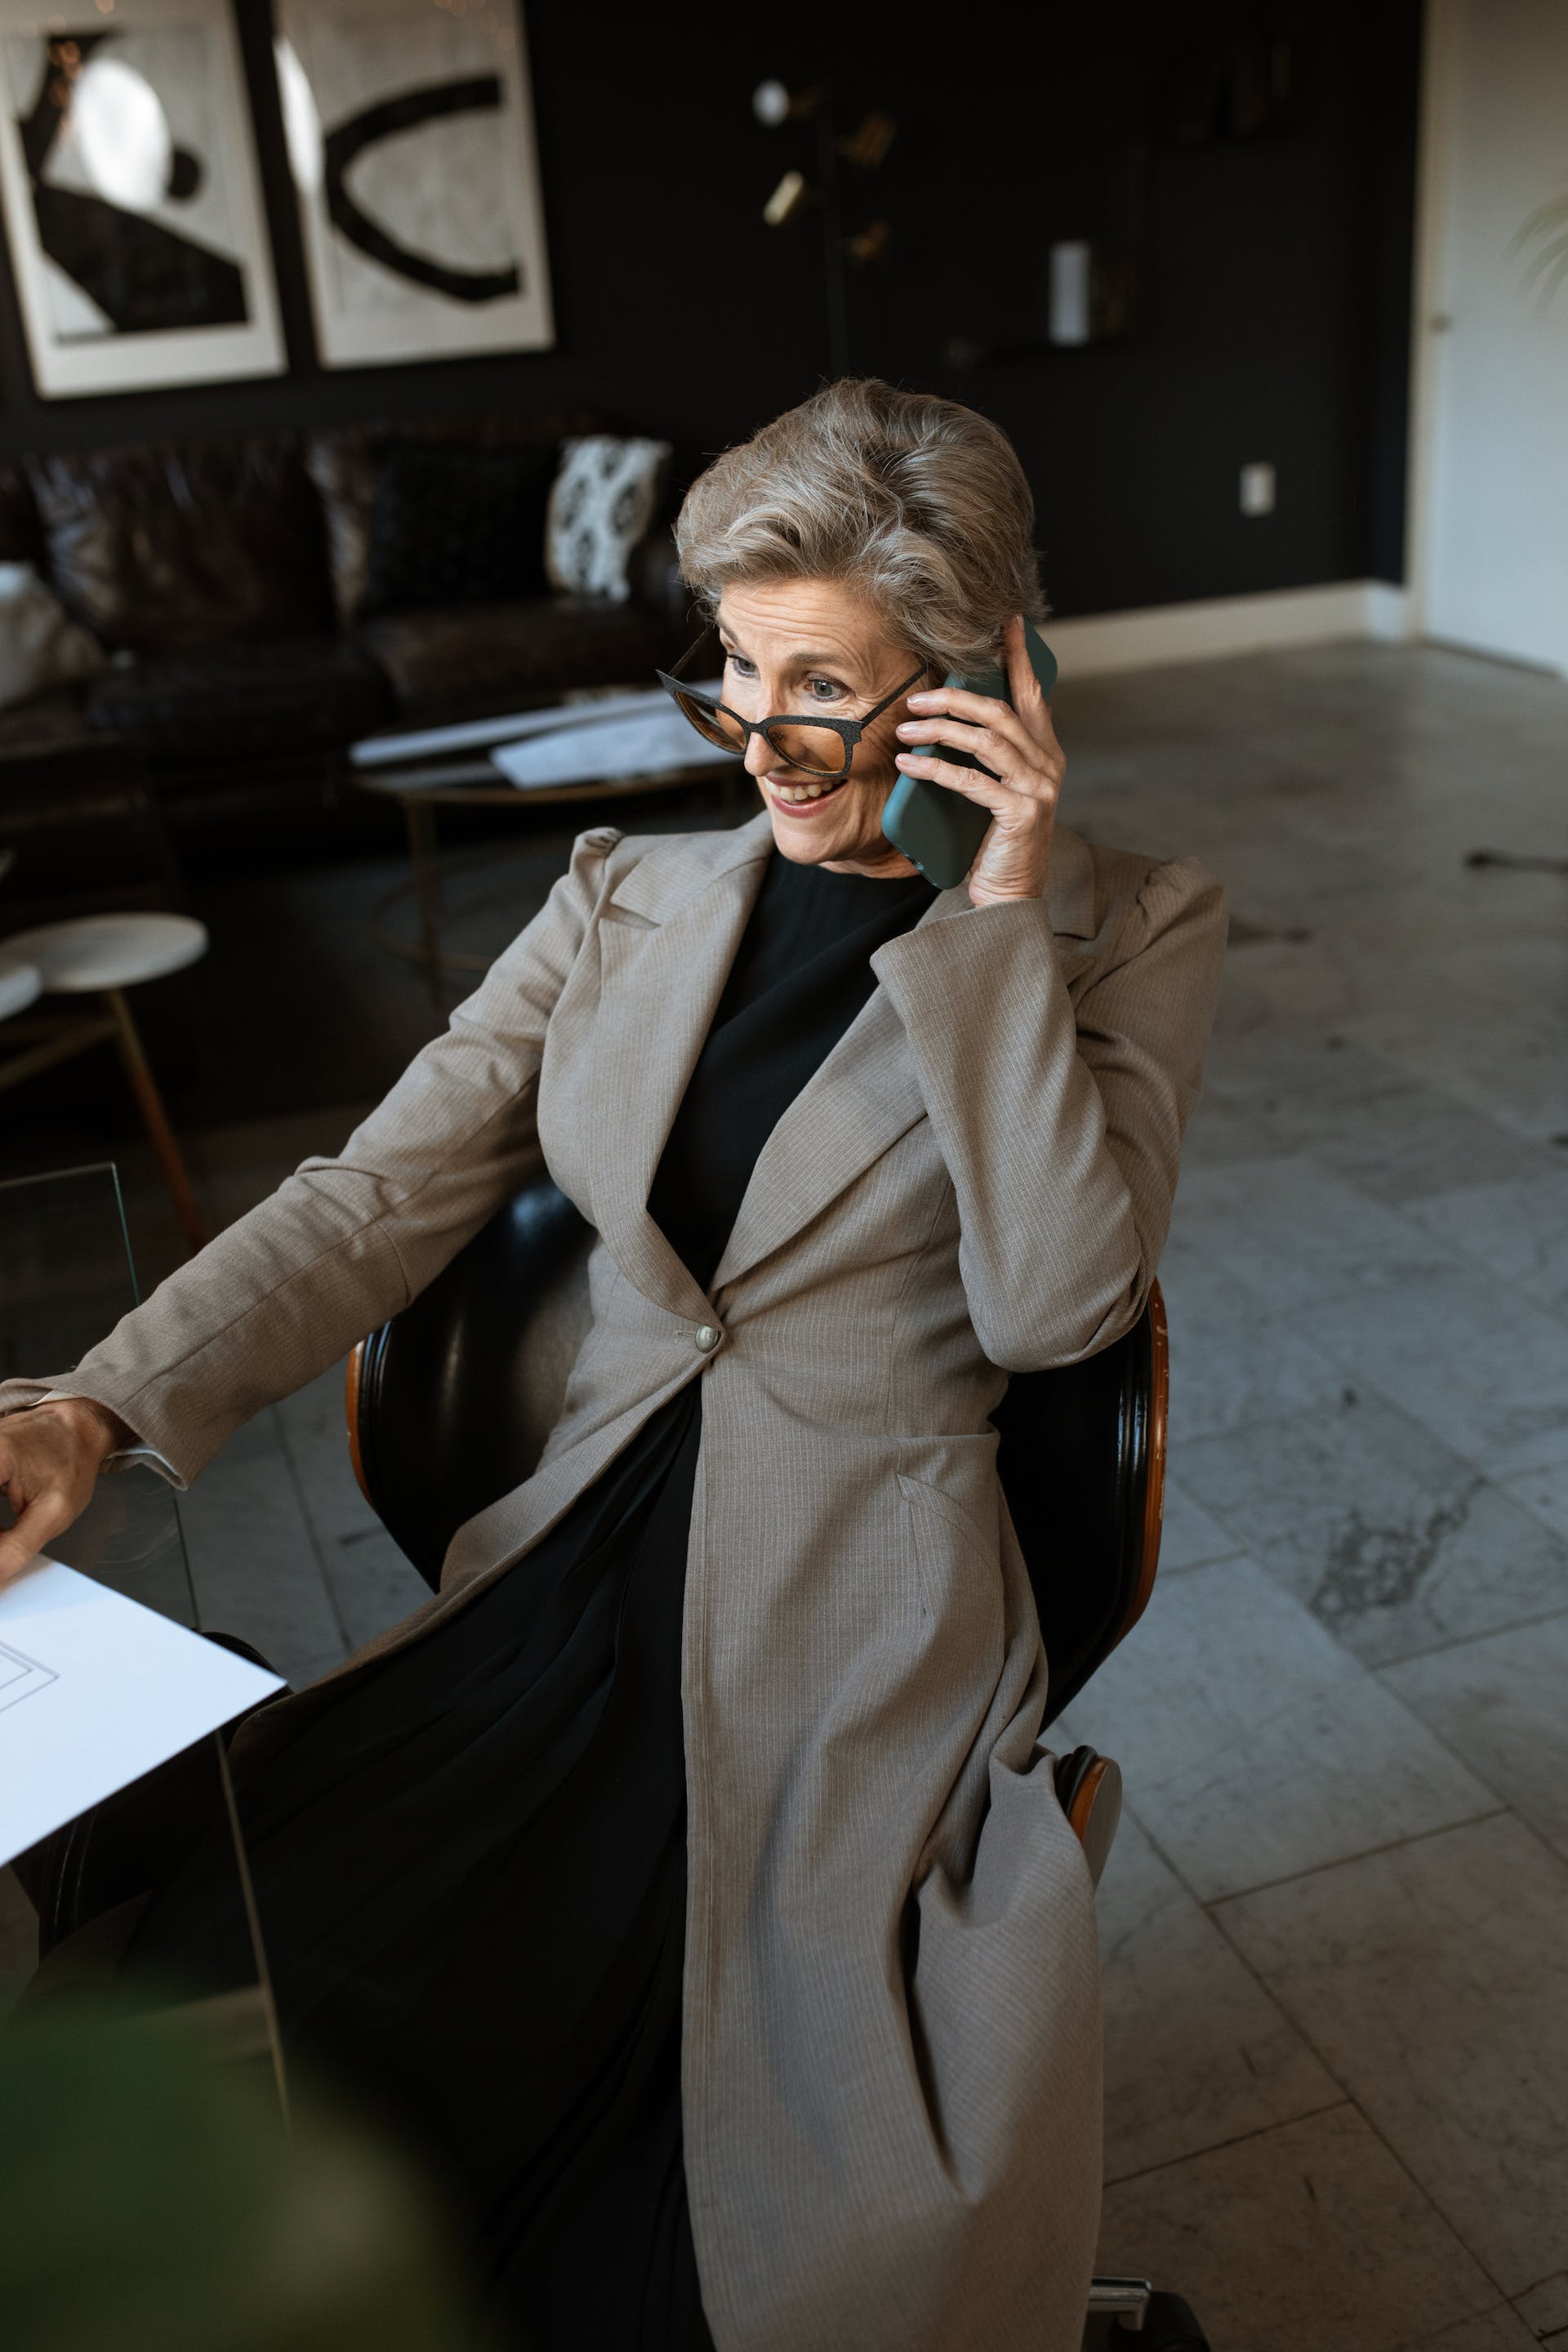 Eine ältere Frau in einem grauen Mantel sitzt beim Telefonieren auf einem Stuhl | Quelle: Pexels